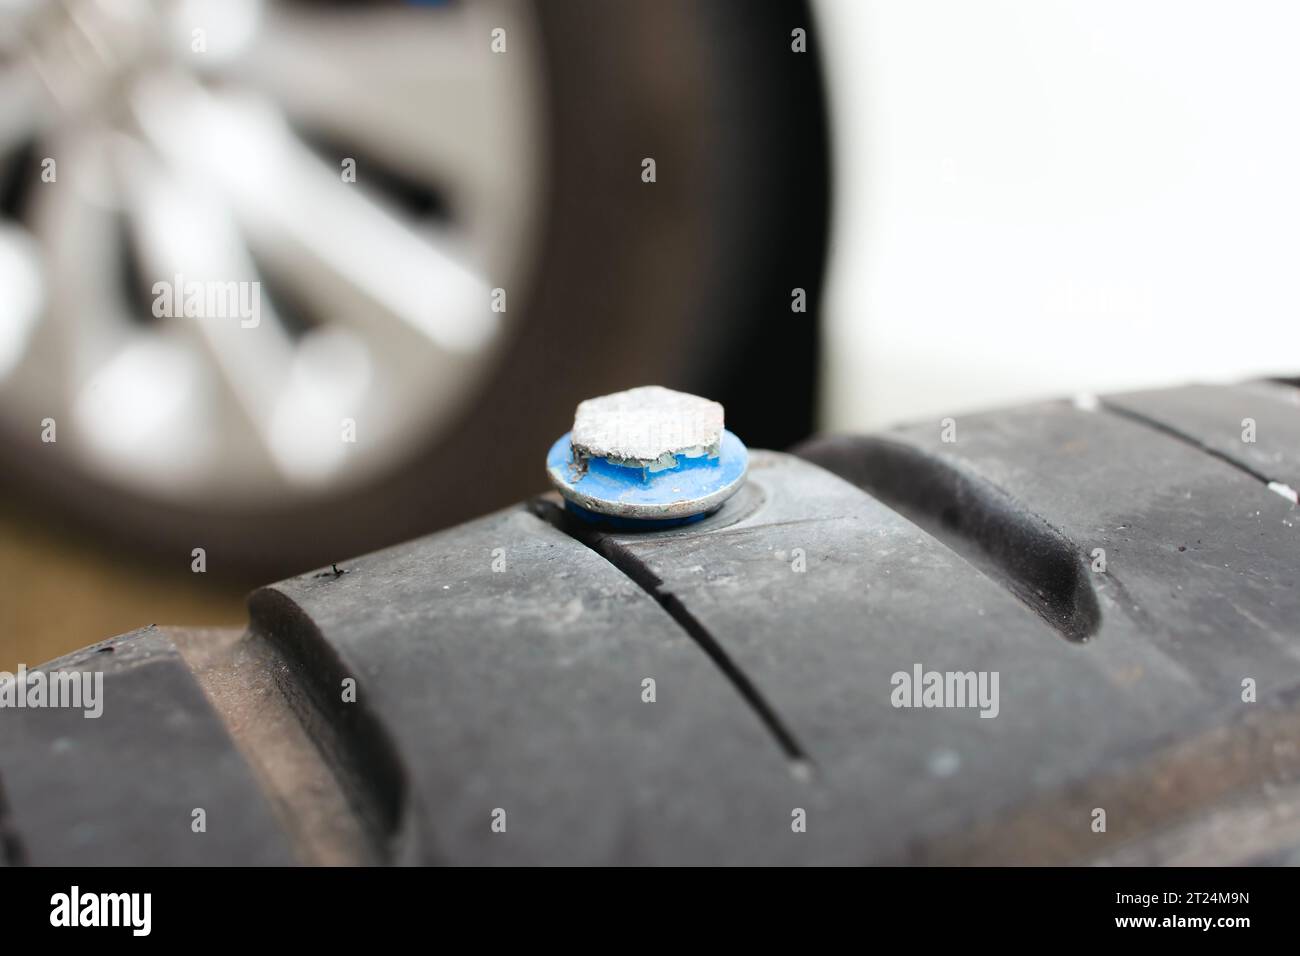 Schließen Sie ein Autoreifen, das mit Metallschrauben am Reifen durchstochen ist, und scharfe Schrauben durchstechen die Seite des Autoreifens. Automobilkonzept Stockfoto